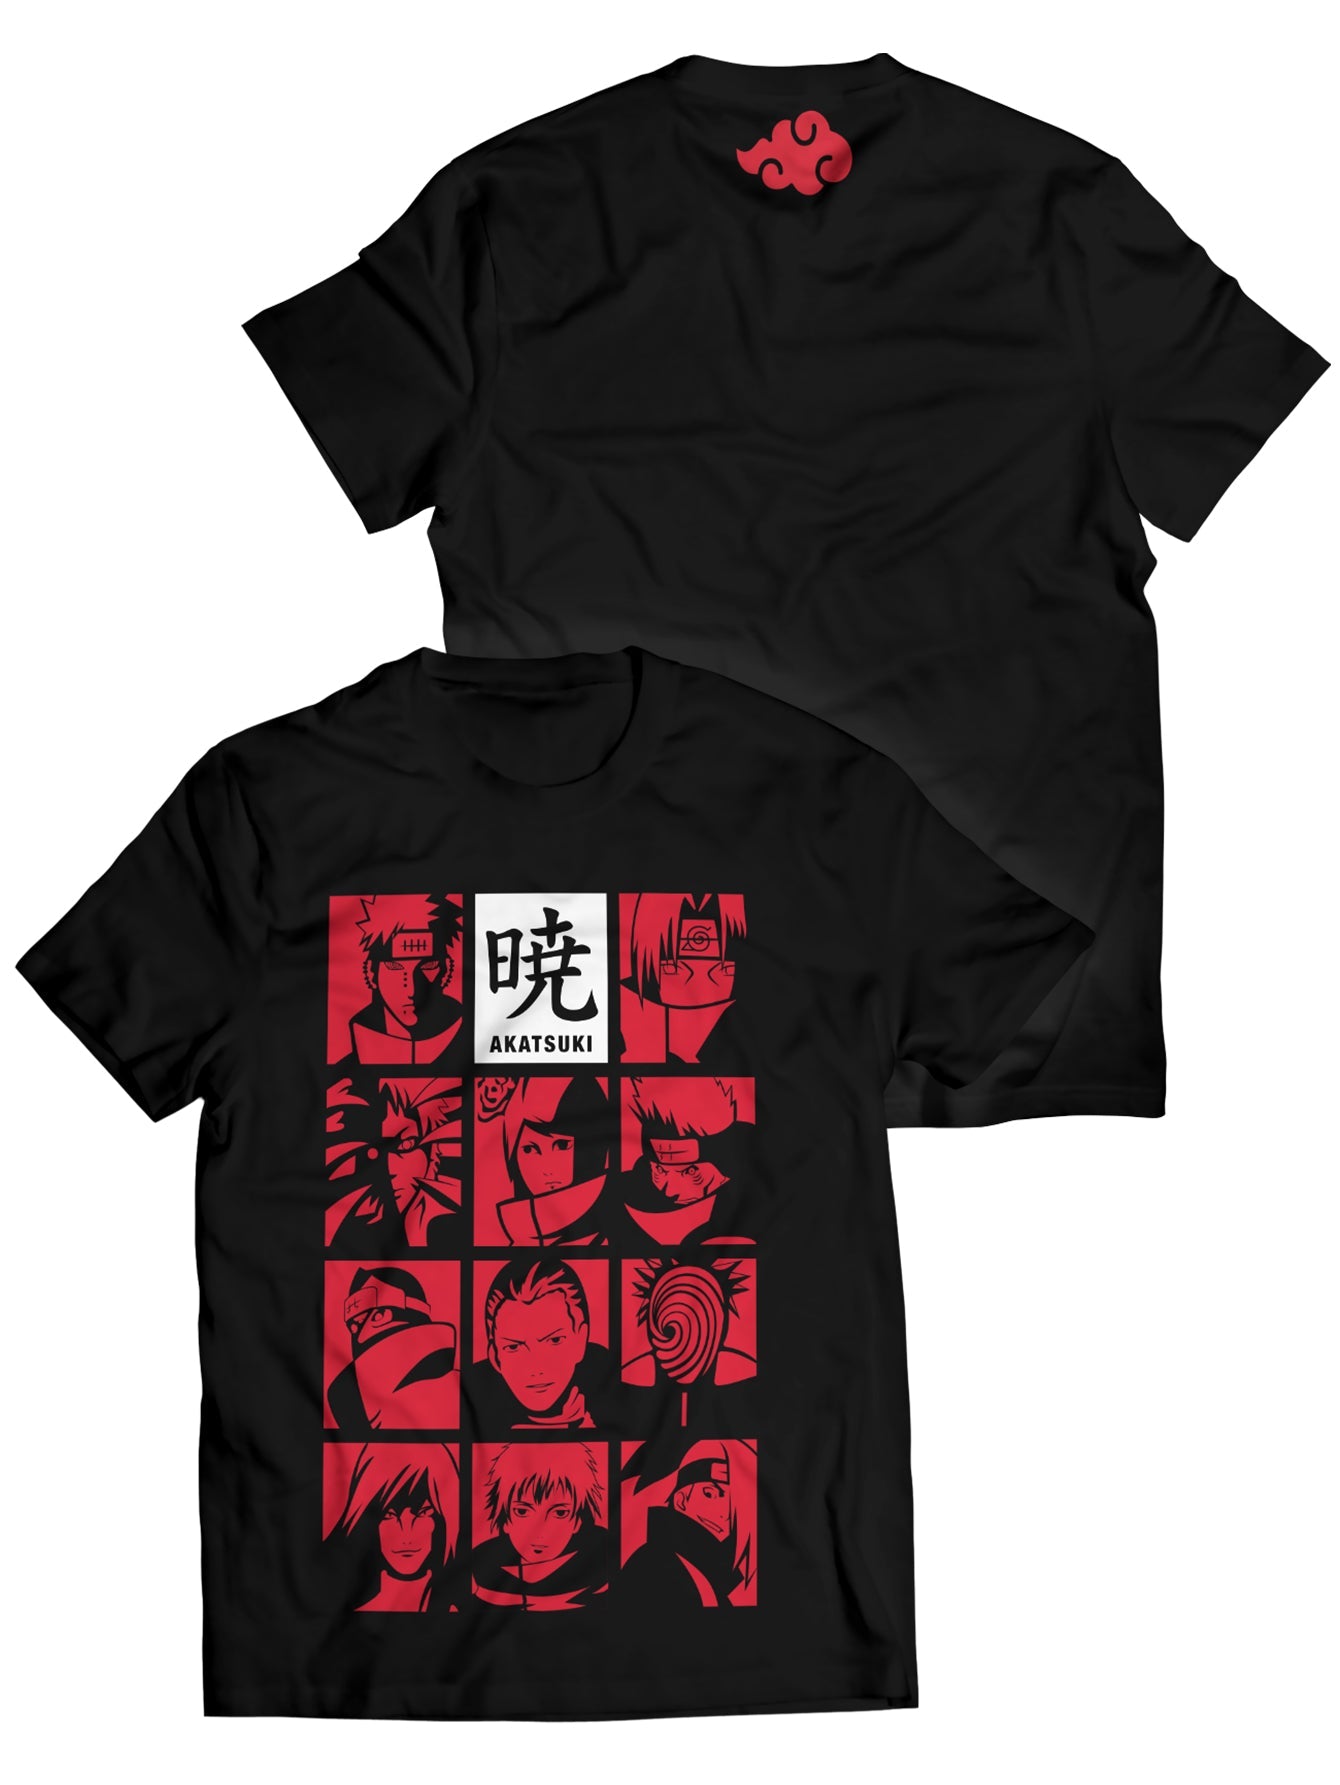 Fandomaniax - Dawn Shinobi Unisex T-Shirt